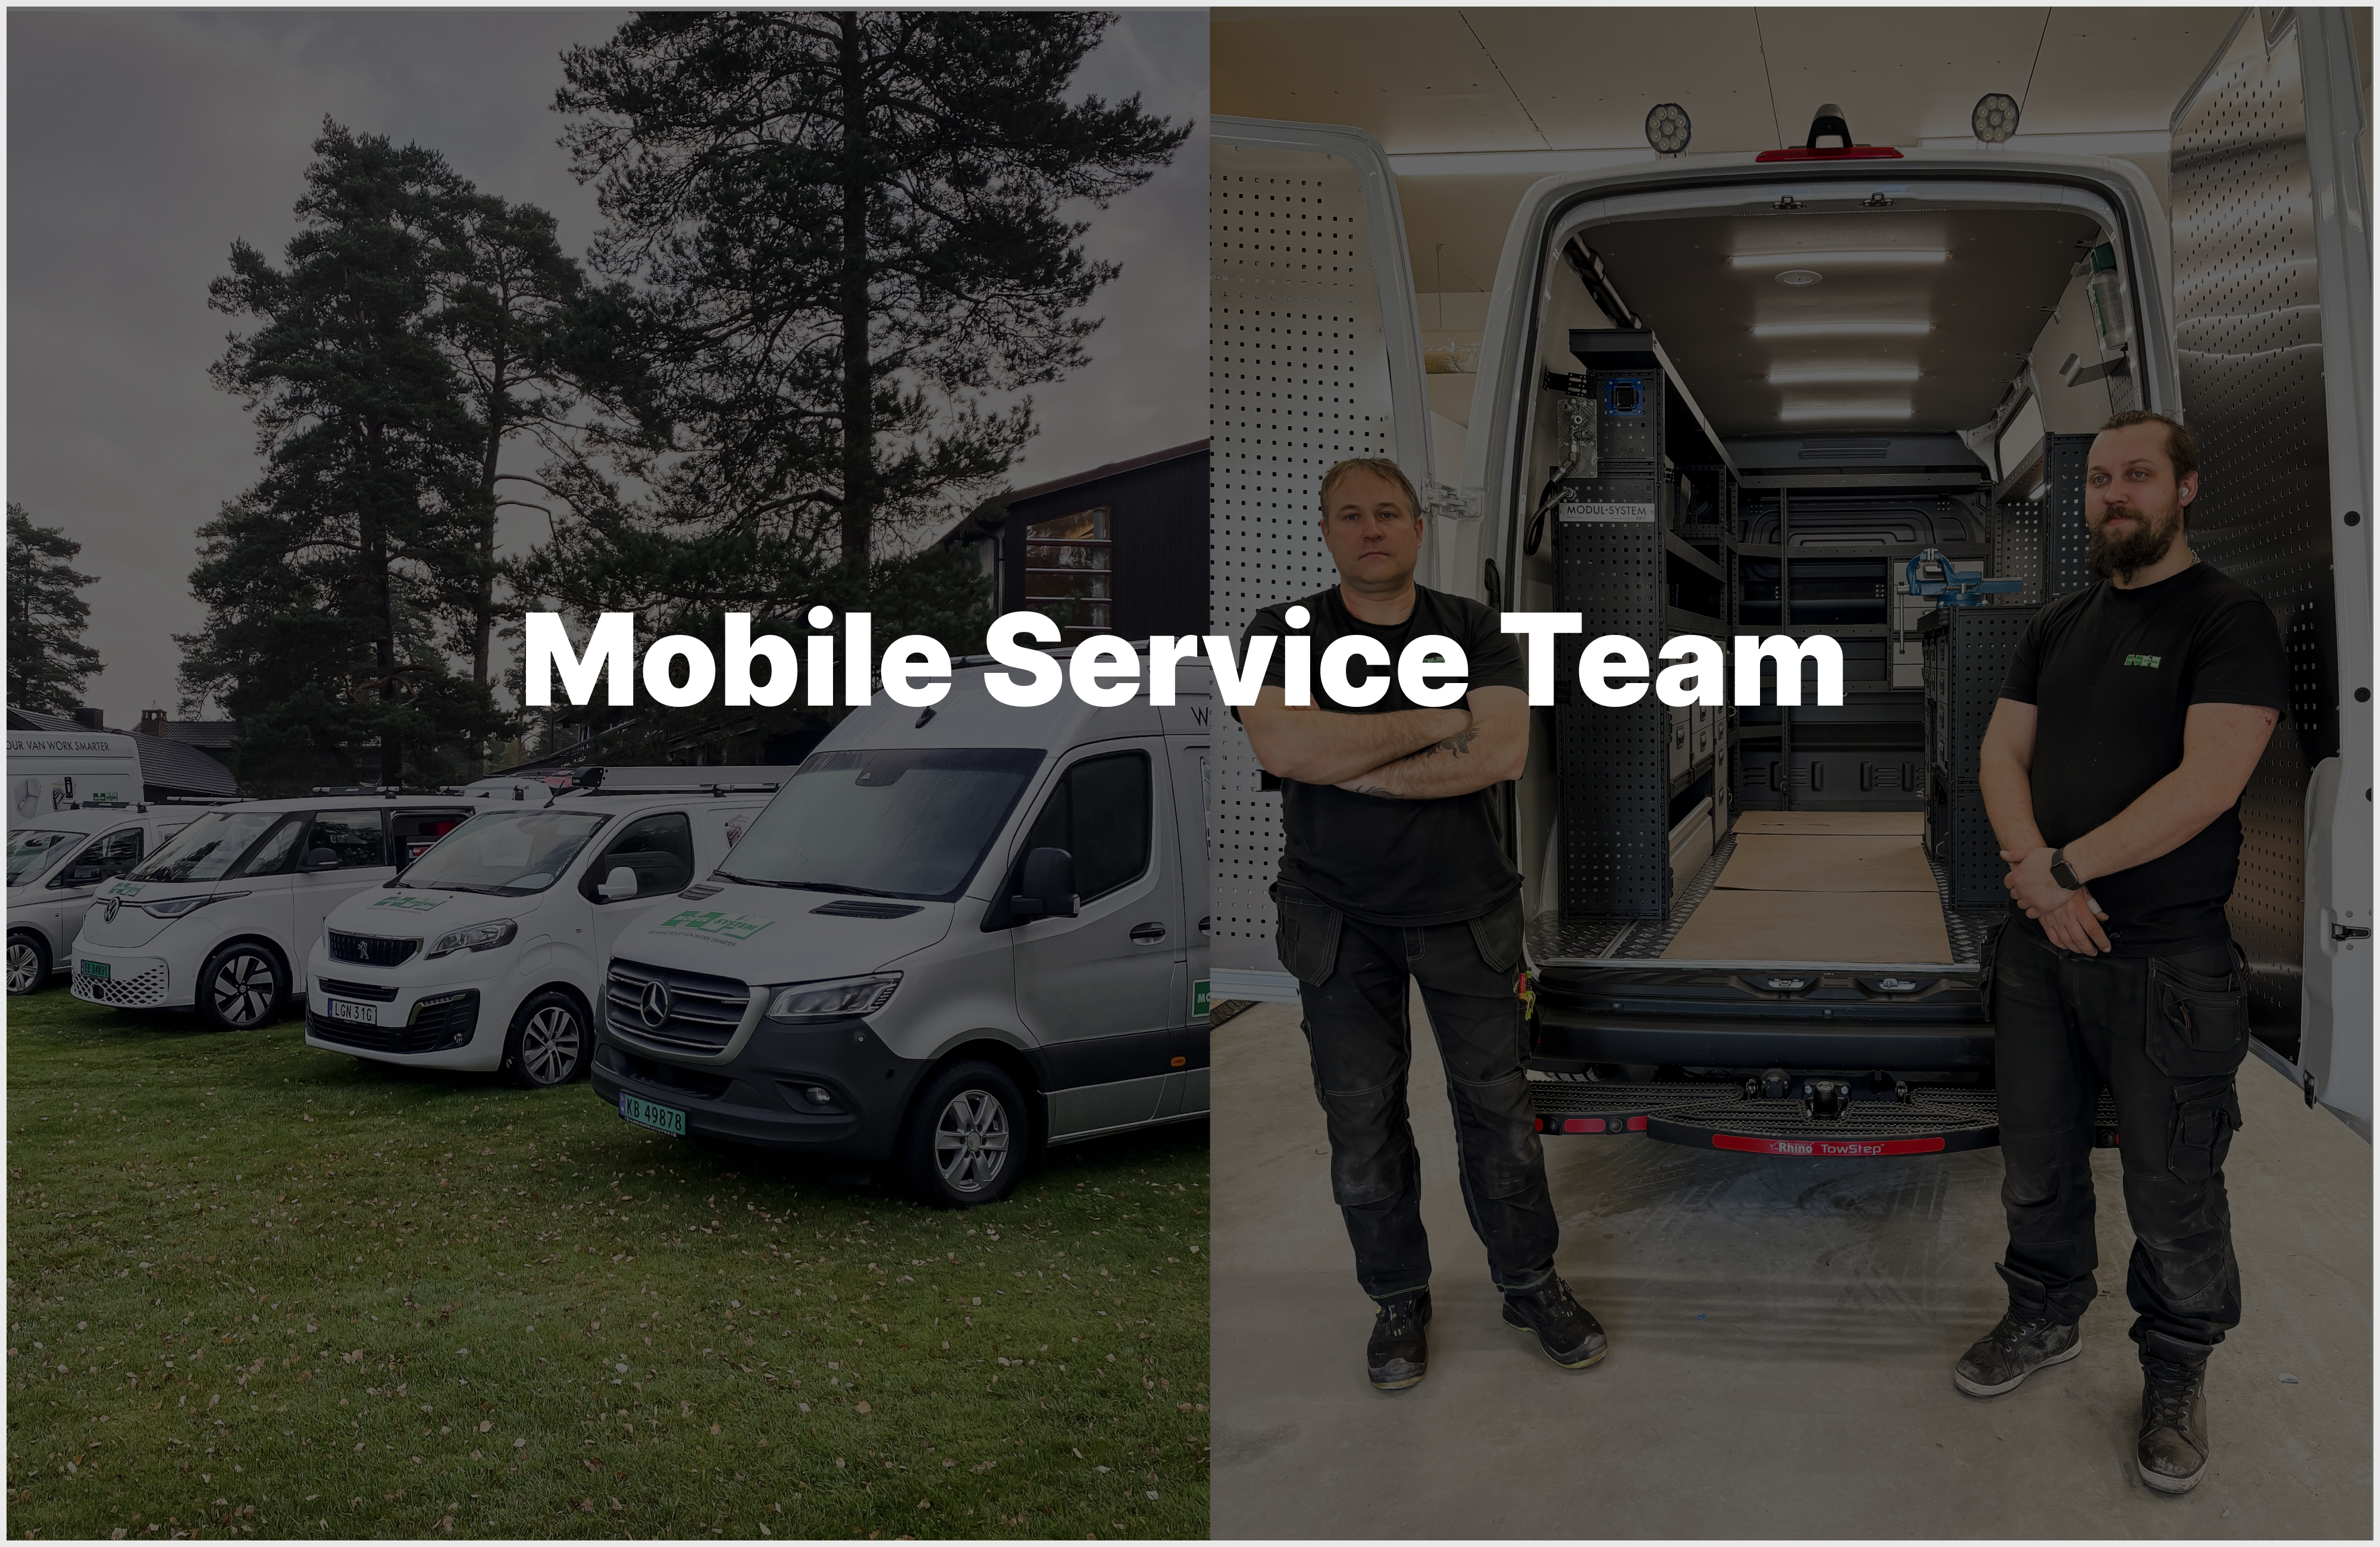 Modul-System Mobile Service Team på väg till dig